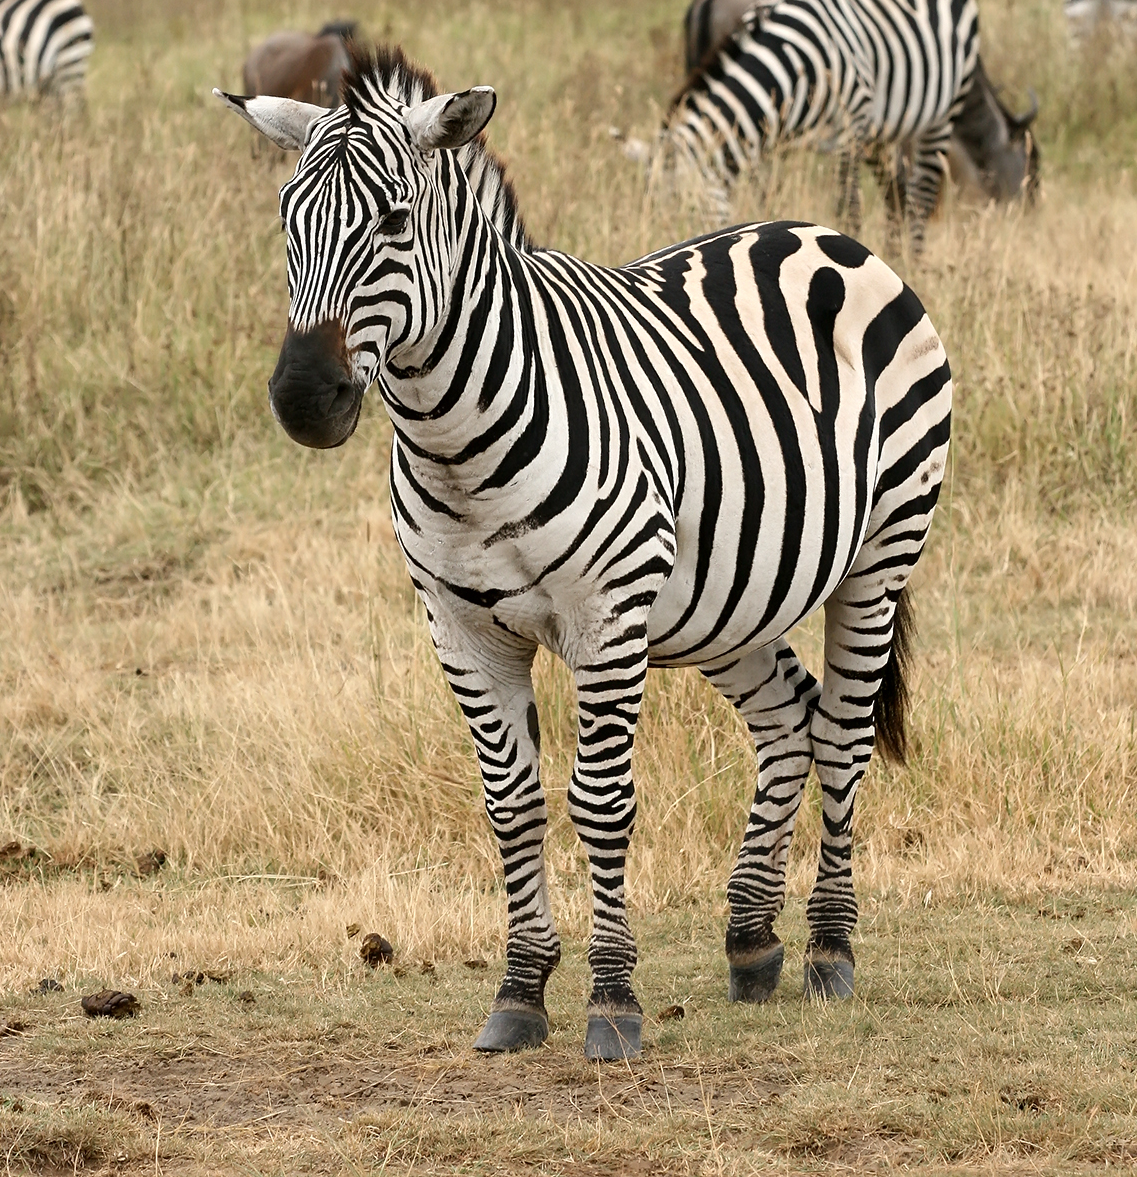 zebra-beautiful-animal-facts-photographs-wildlife-of-world